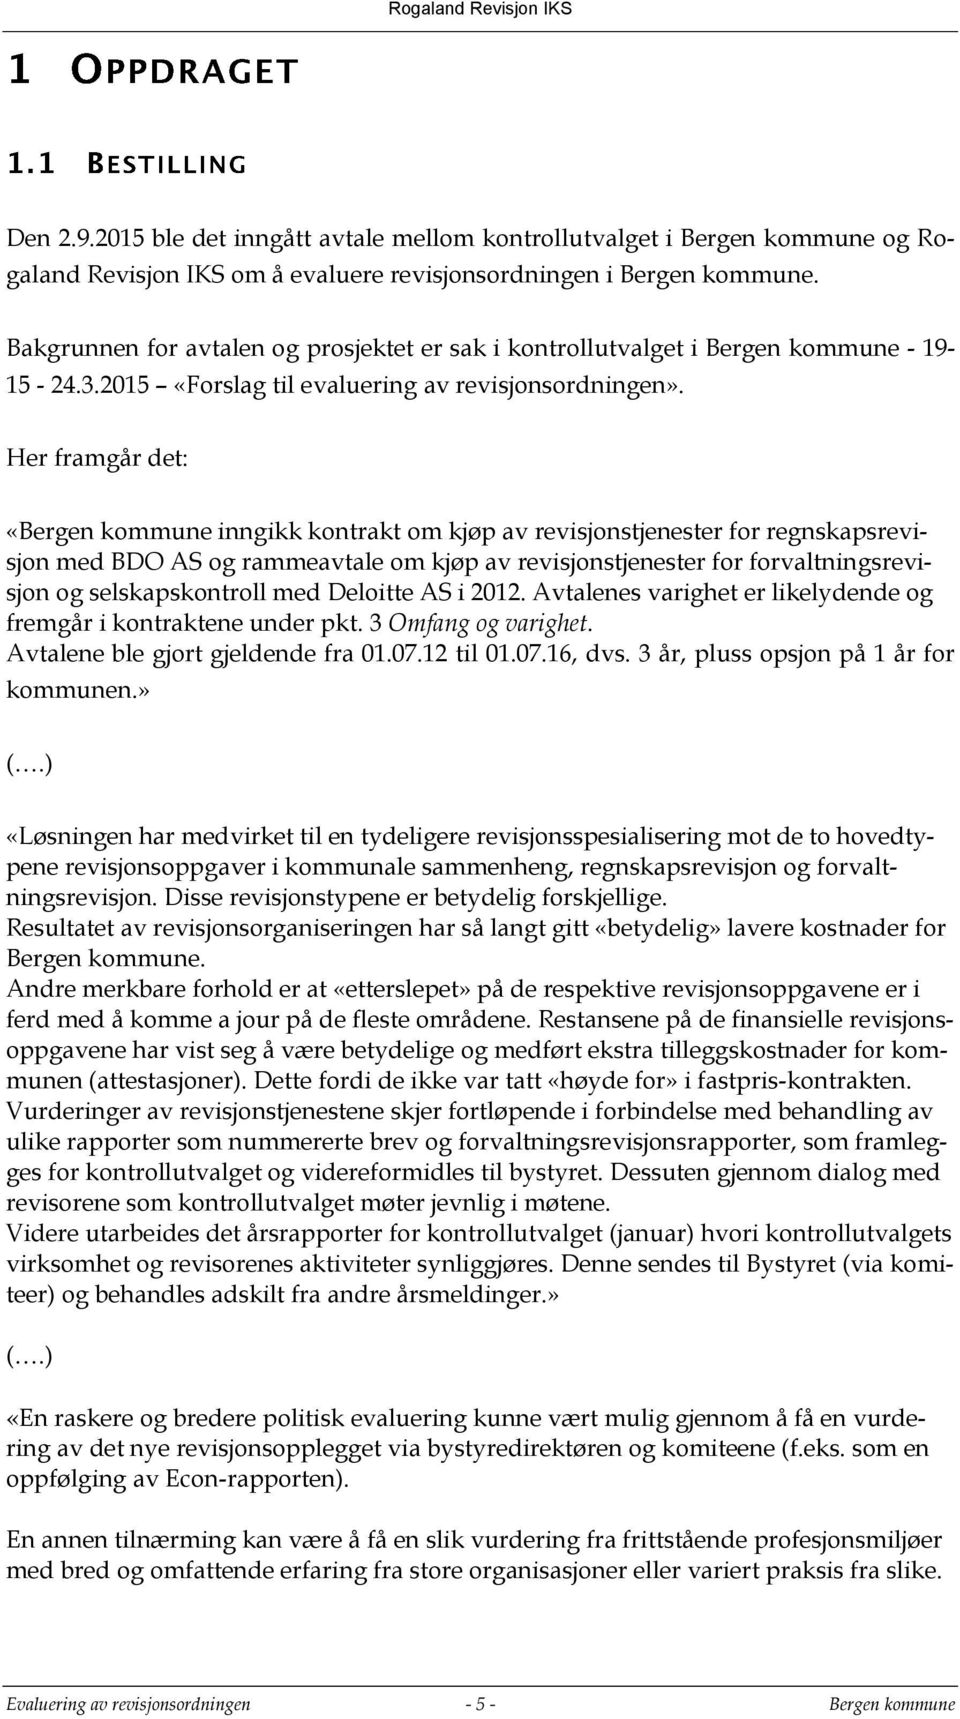 Her framgår det: «Bergen kommune inngikk kontrakt om kjøp av revisjonstjenester for regnskapsrevisjon med BDO AS og rammeavtale om kjøp av revisjonstjenester for forvaltningsrevisjon og